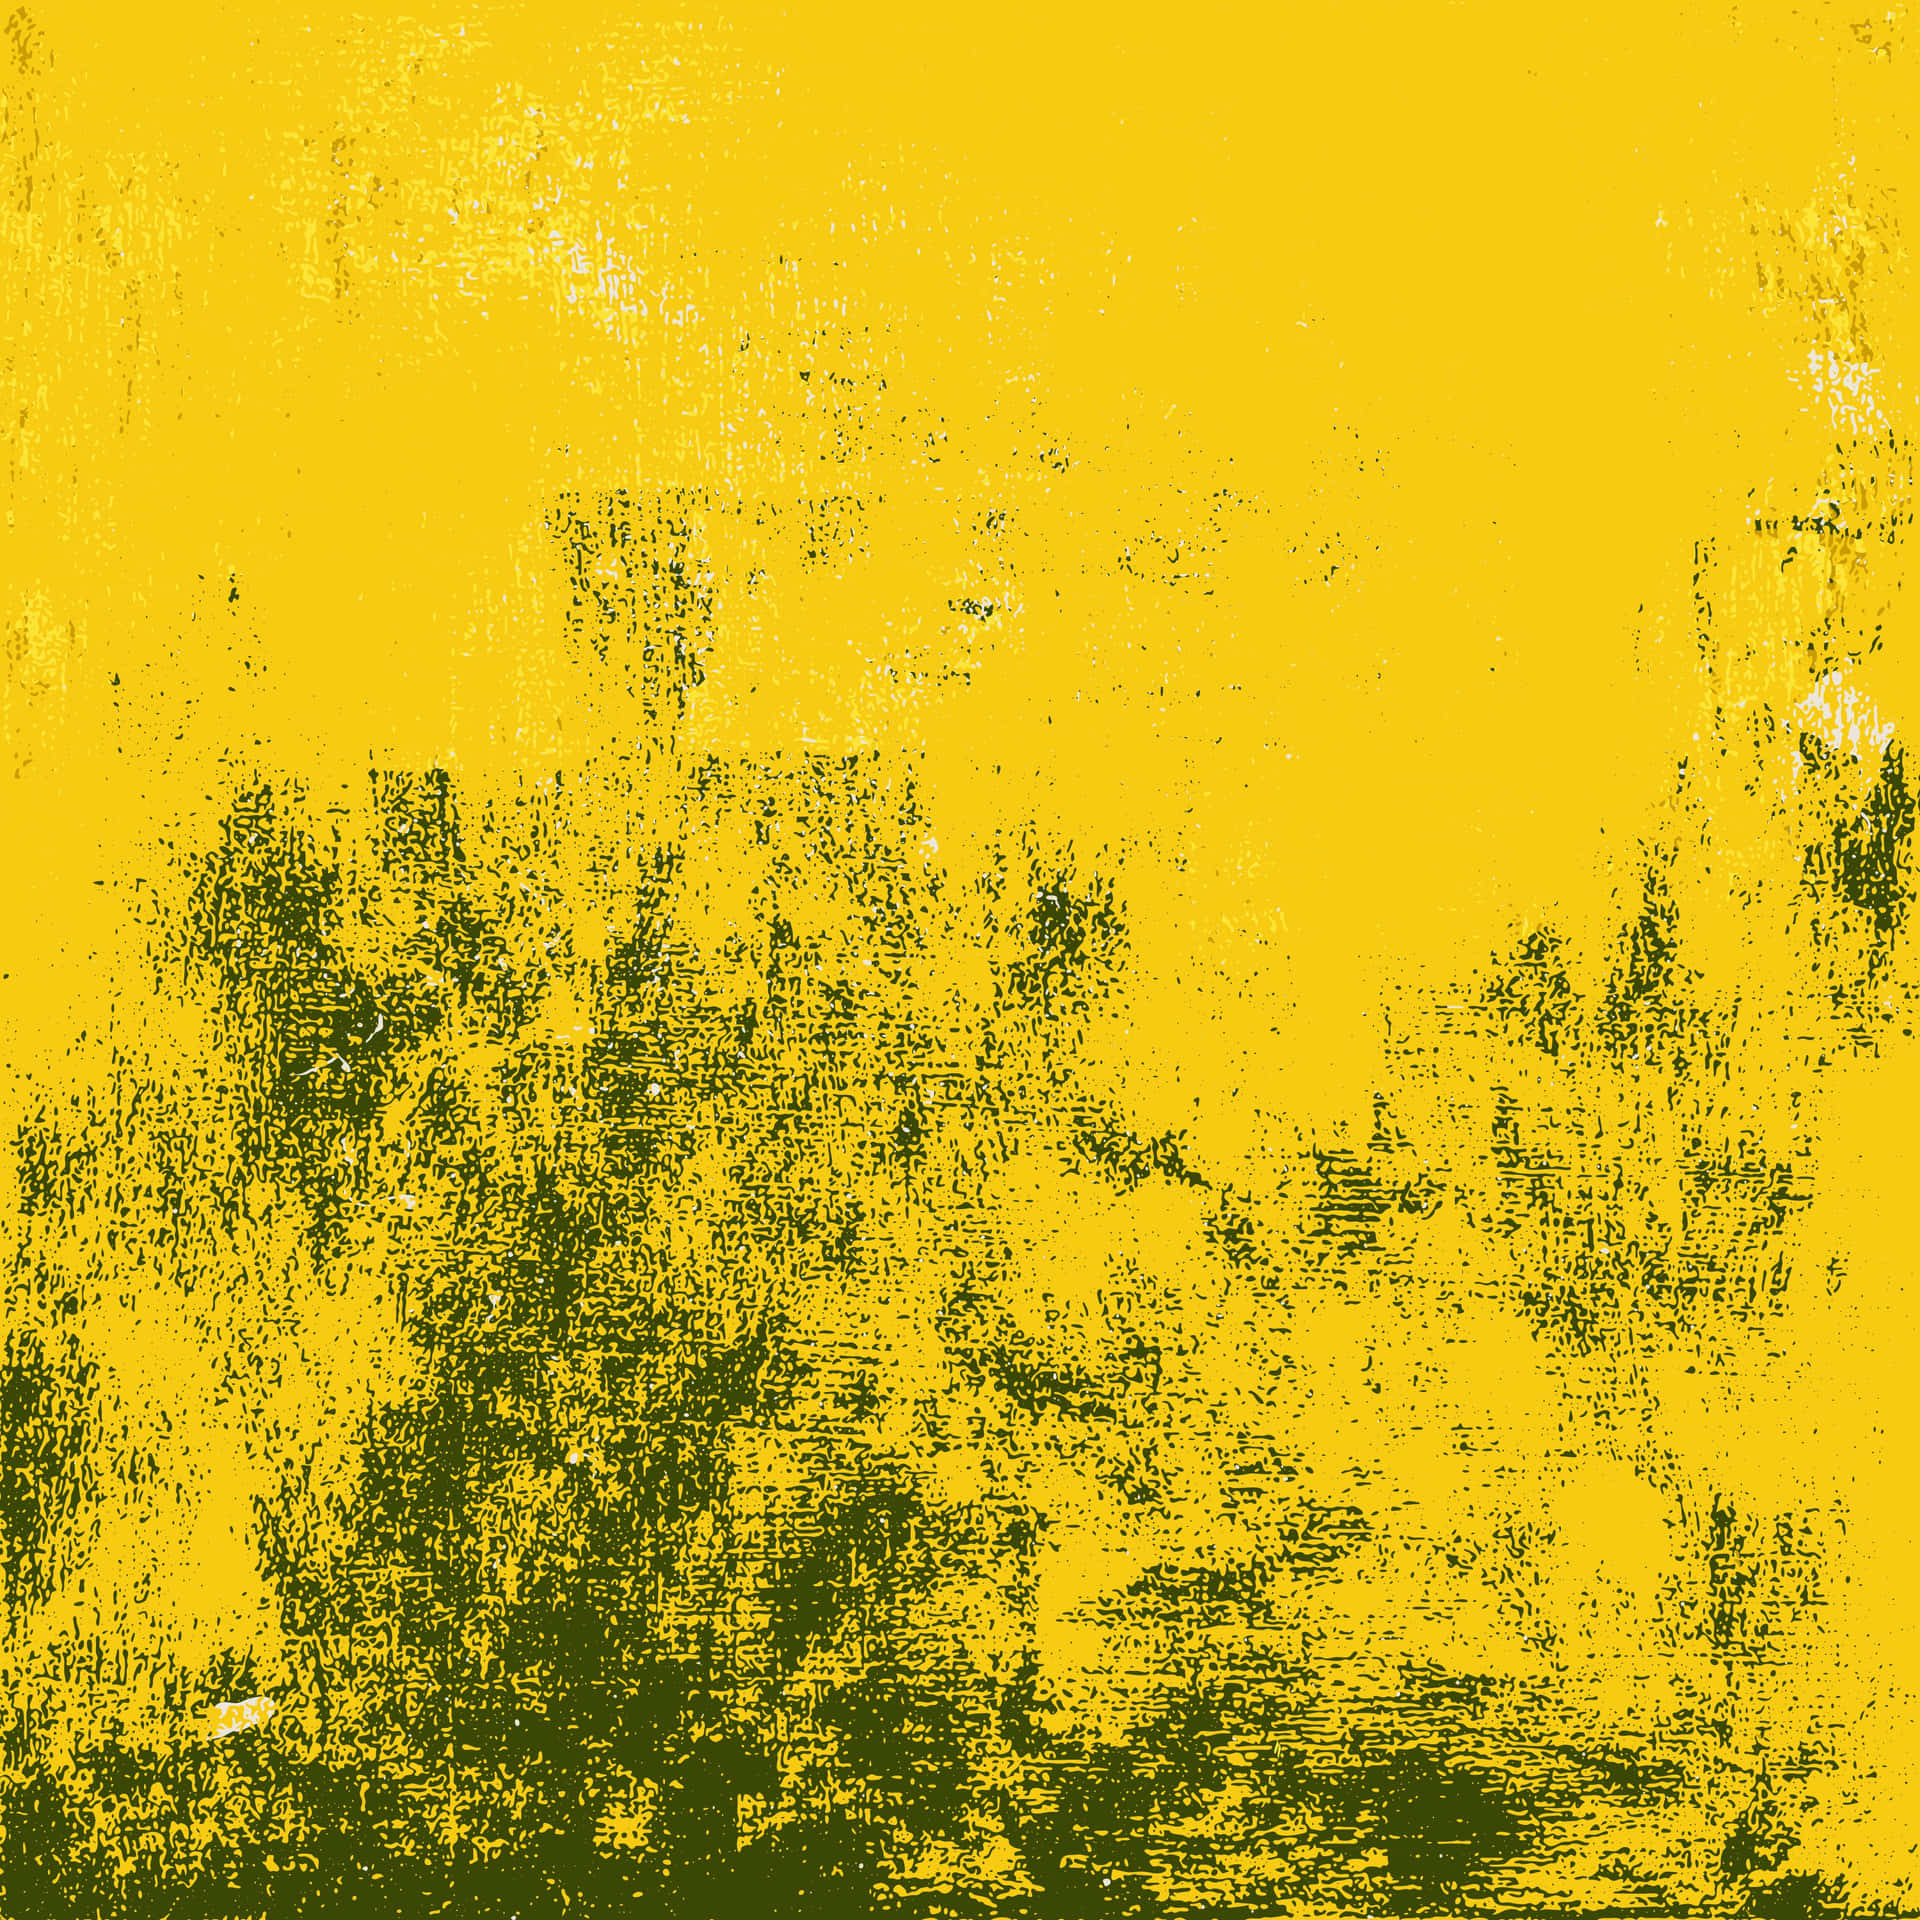 Einelebhafte Mischung Aus Gelb Und Grunge Erzeugt Eine Auffällige Visuelle Darstellung. Wallpaper